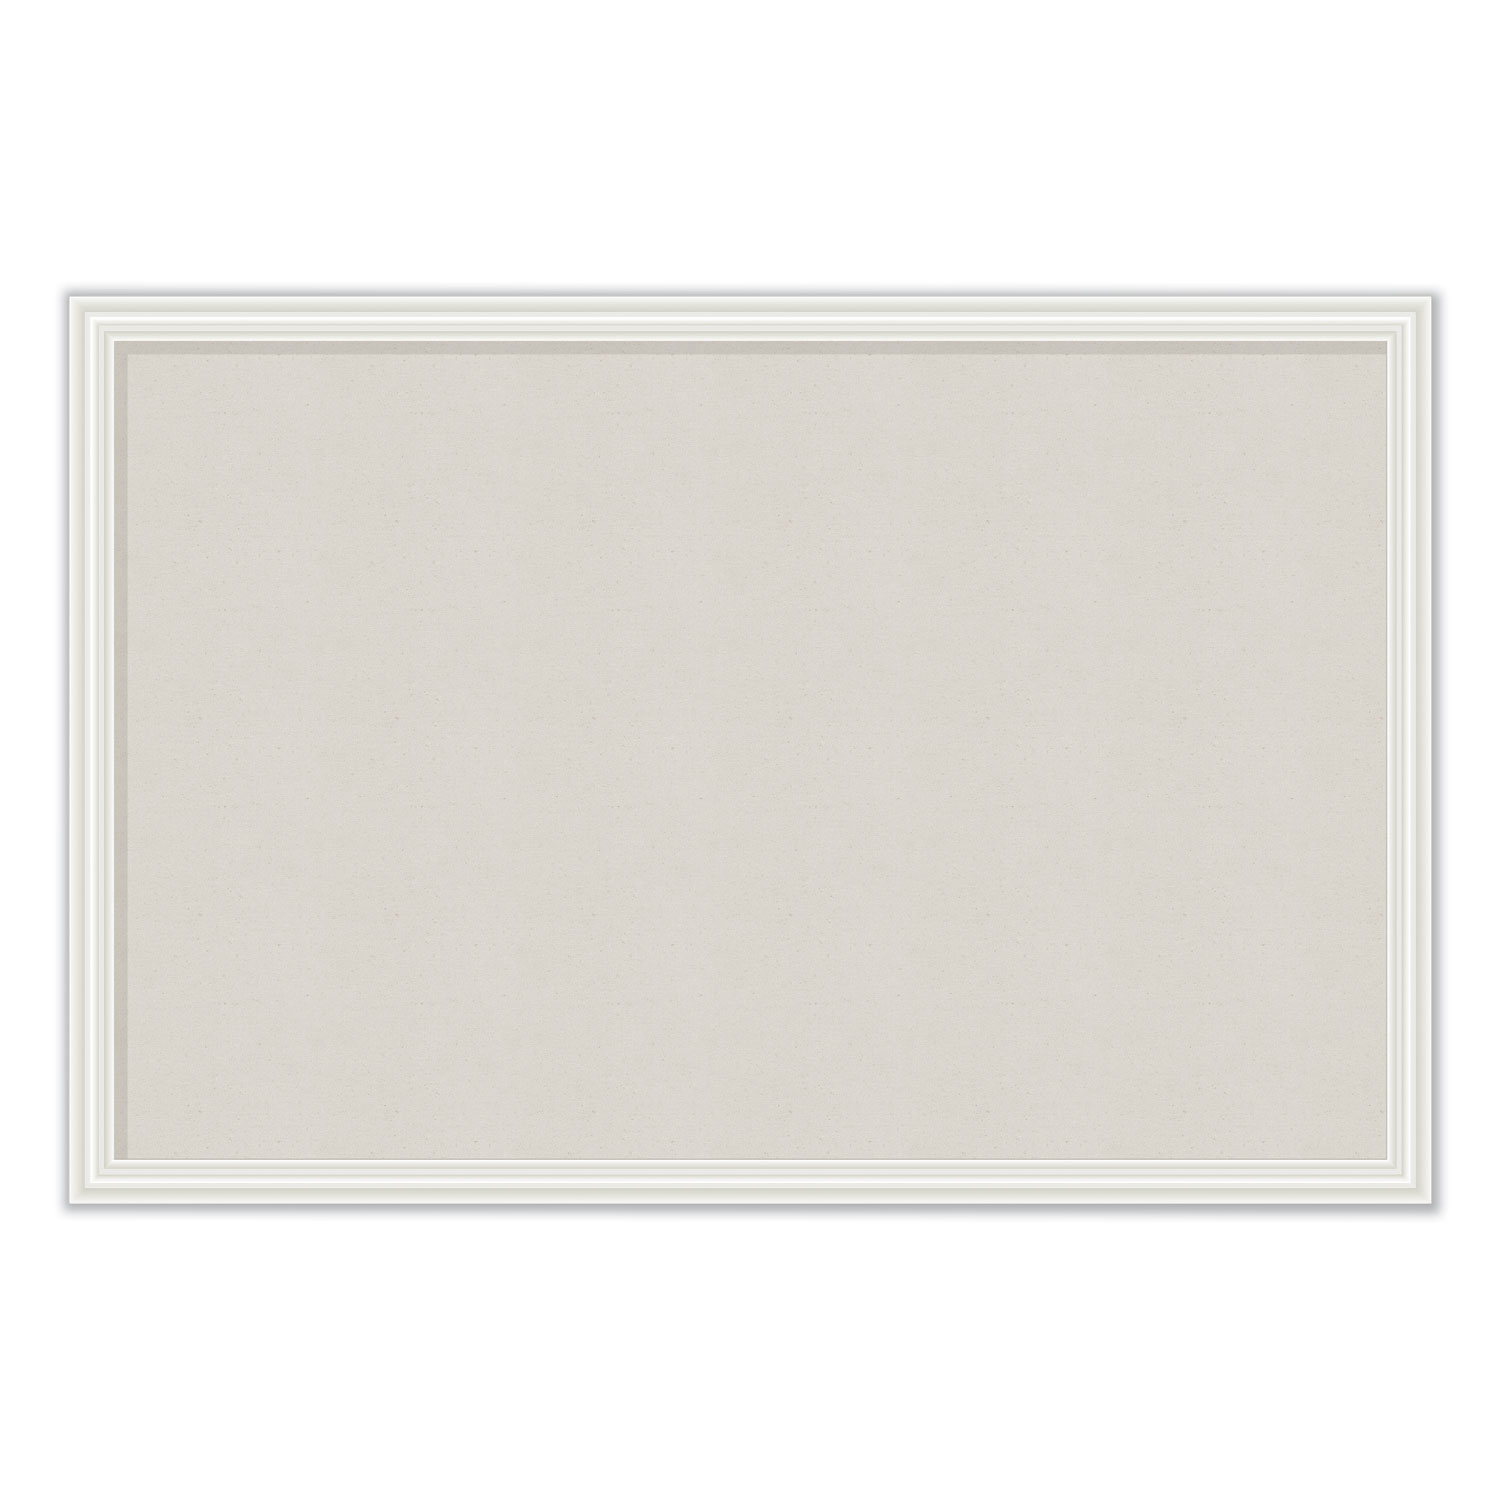  U Brands 2074U00-01 Linen Bulletin Board with Decor Frame, 30 x 20, Natural Surface/White Frame (UBR2074U0001) 